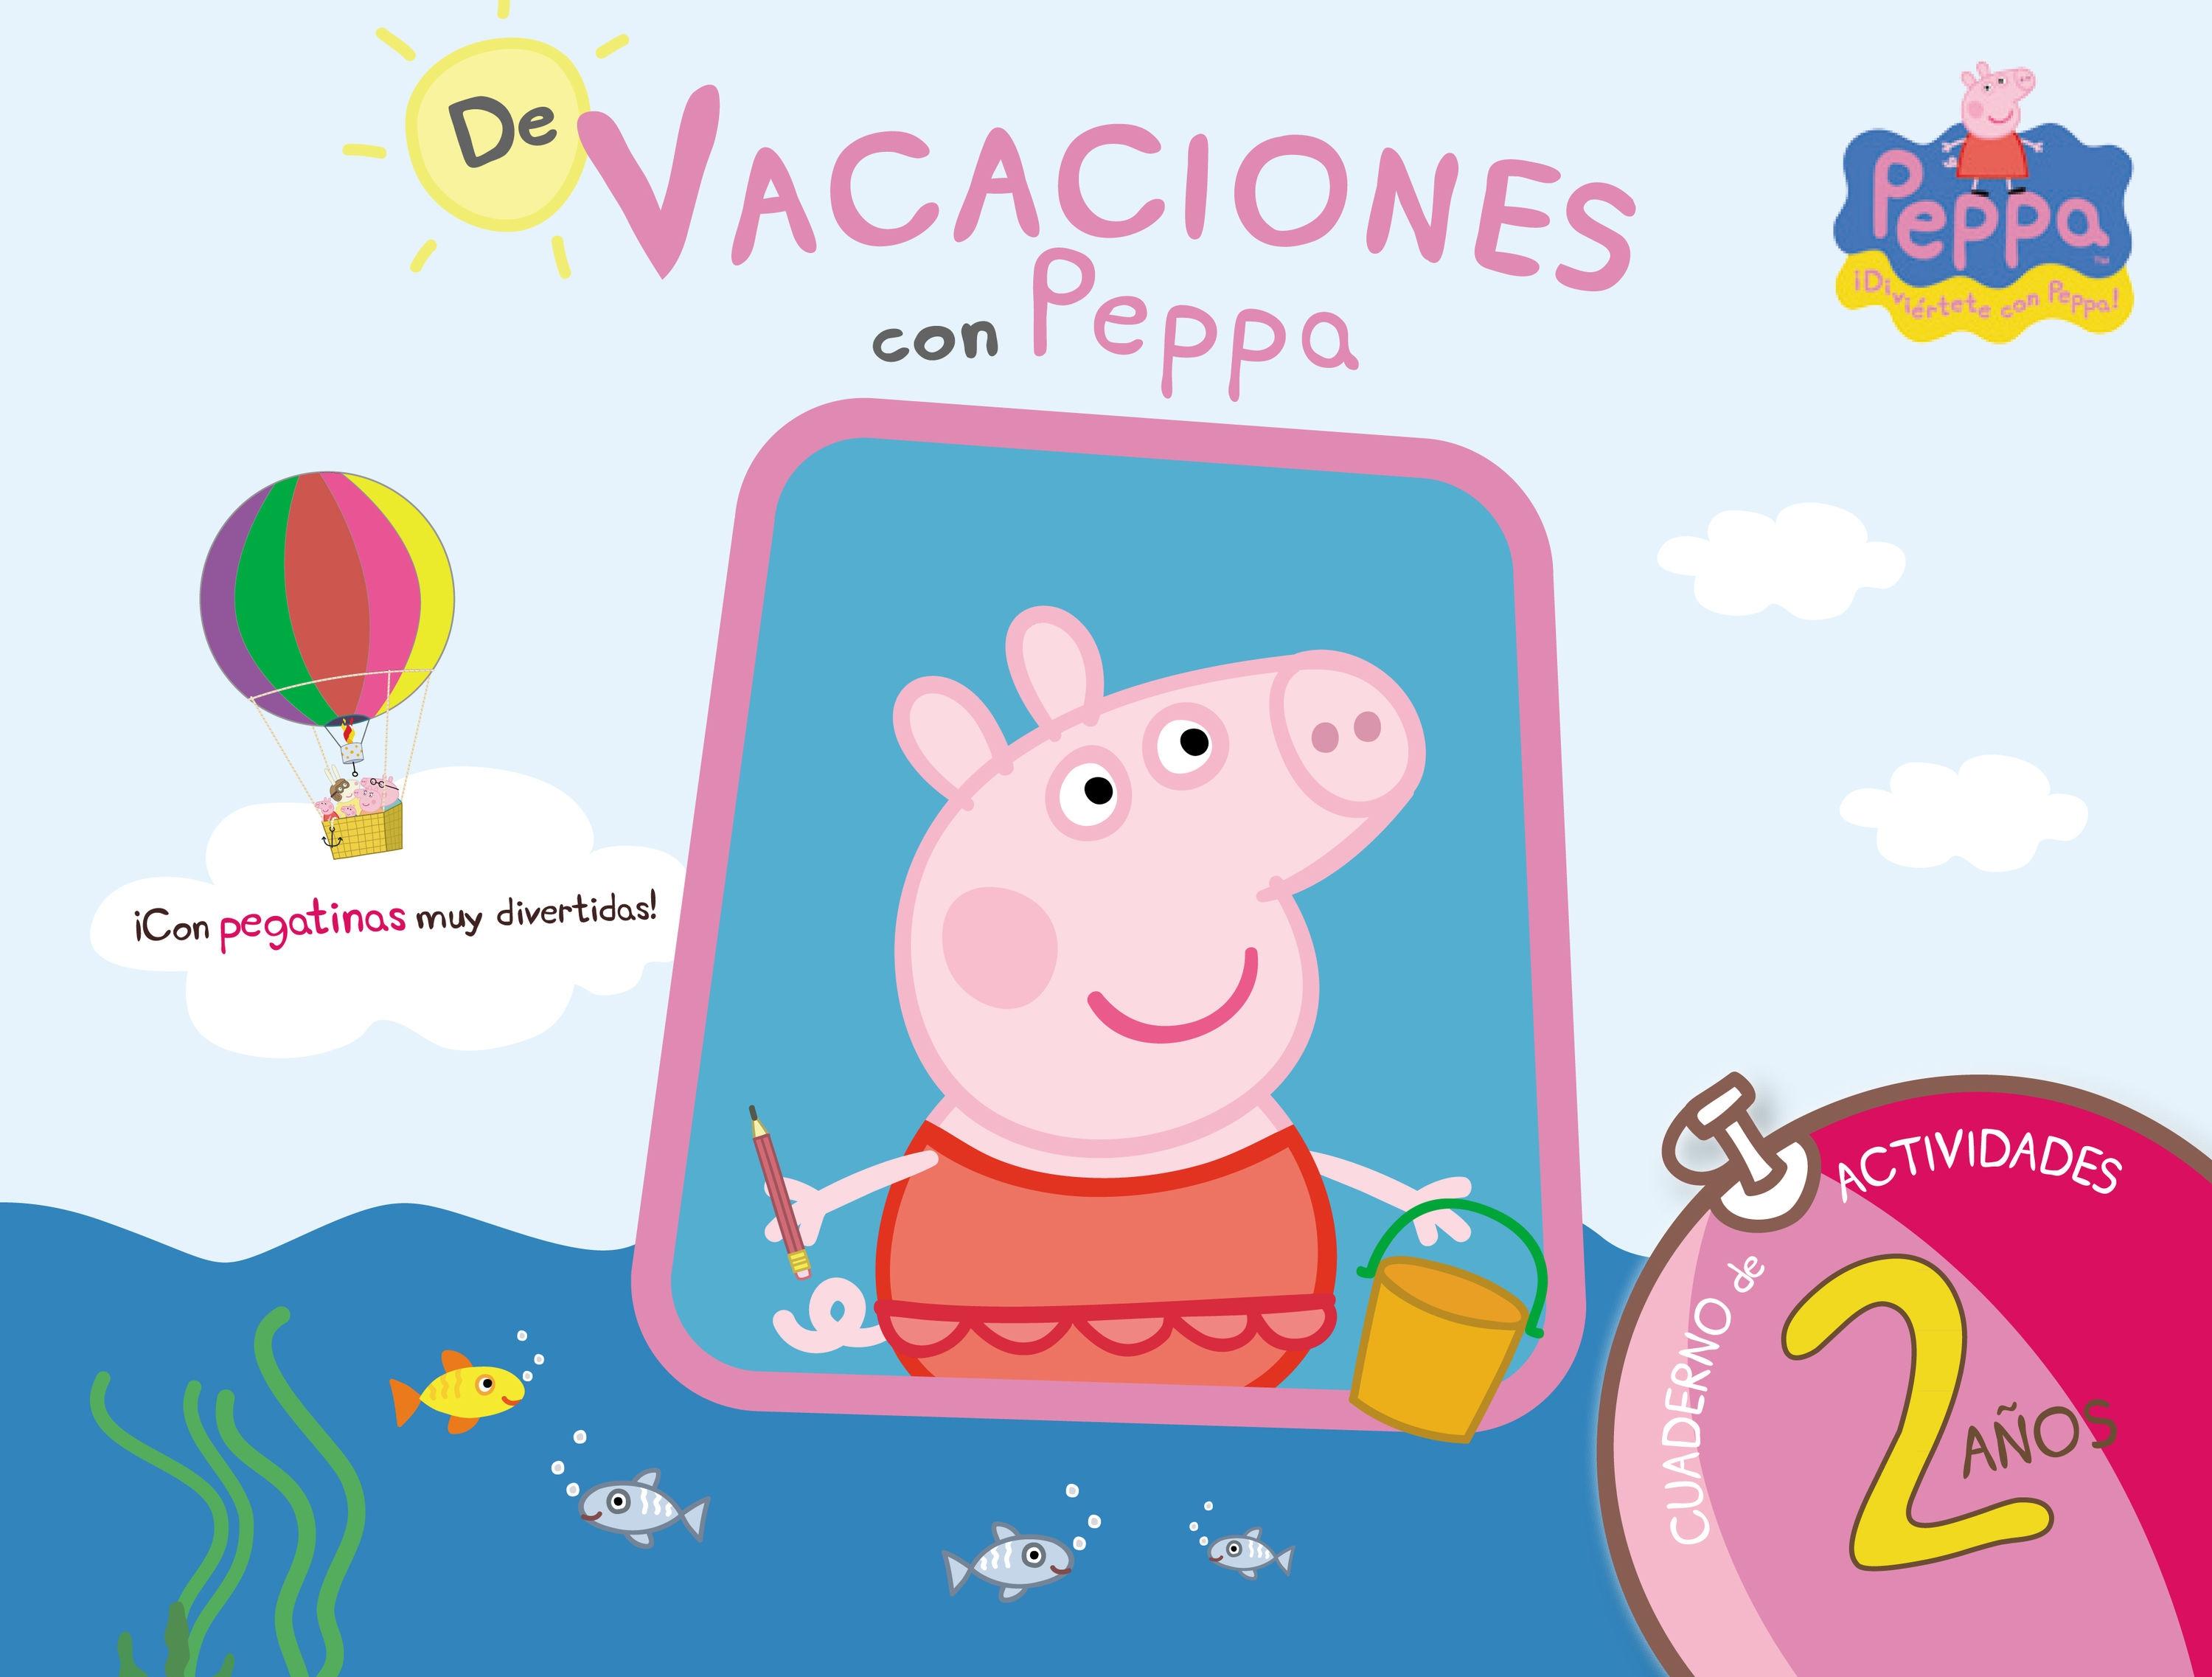 De Vacaciones con Peppa - 2 Años (Peppa Pig. Cuaderno de Actividades) "(Con Pegatinas)". 